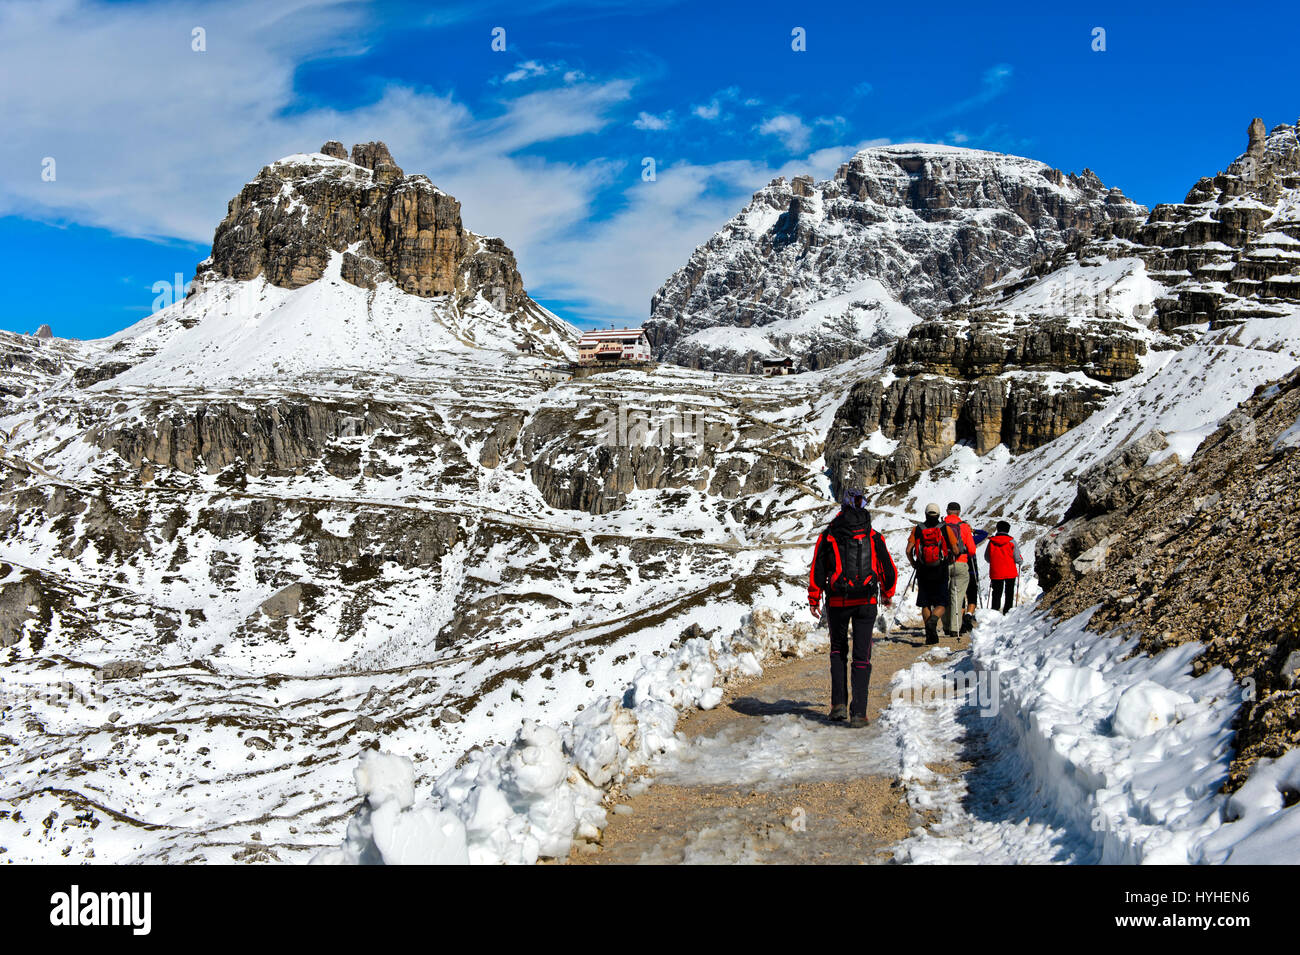 Gli escursionisti sulla coperta di neve sentiero escursionistico delle Tre Cime di Lavaredo circolare a piedi, Dolomiti di Sesto, Alto Adige, Trentino Alto Adige, Italia Foto Stock